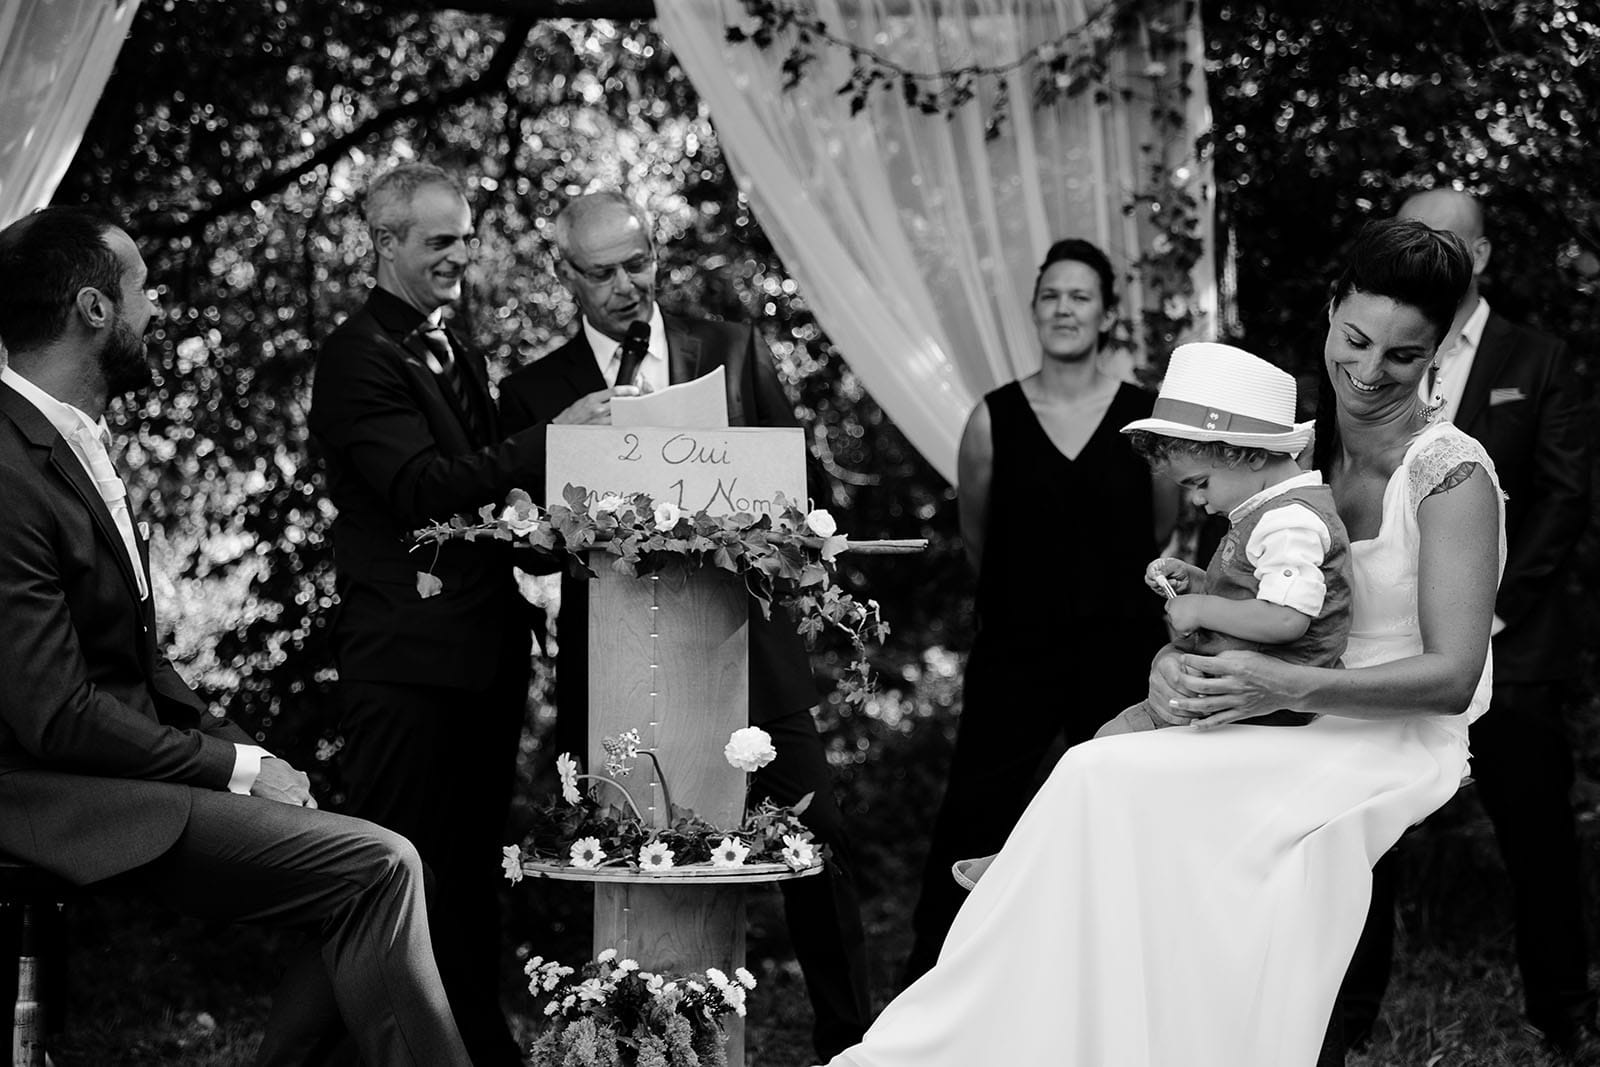 photographe de mariage Saint Etienne émotion joie bonheur cérémonie laique mariage champêtre